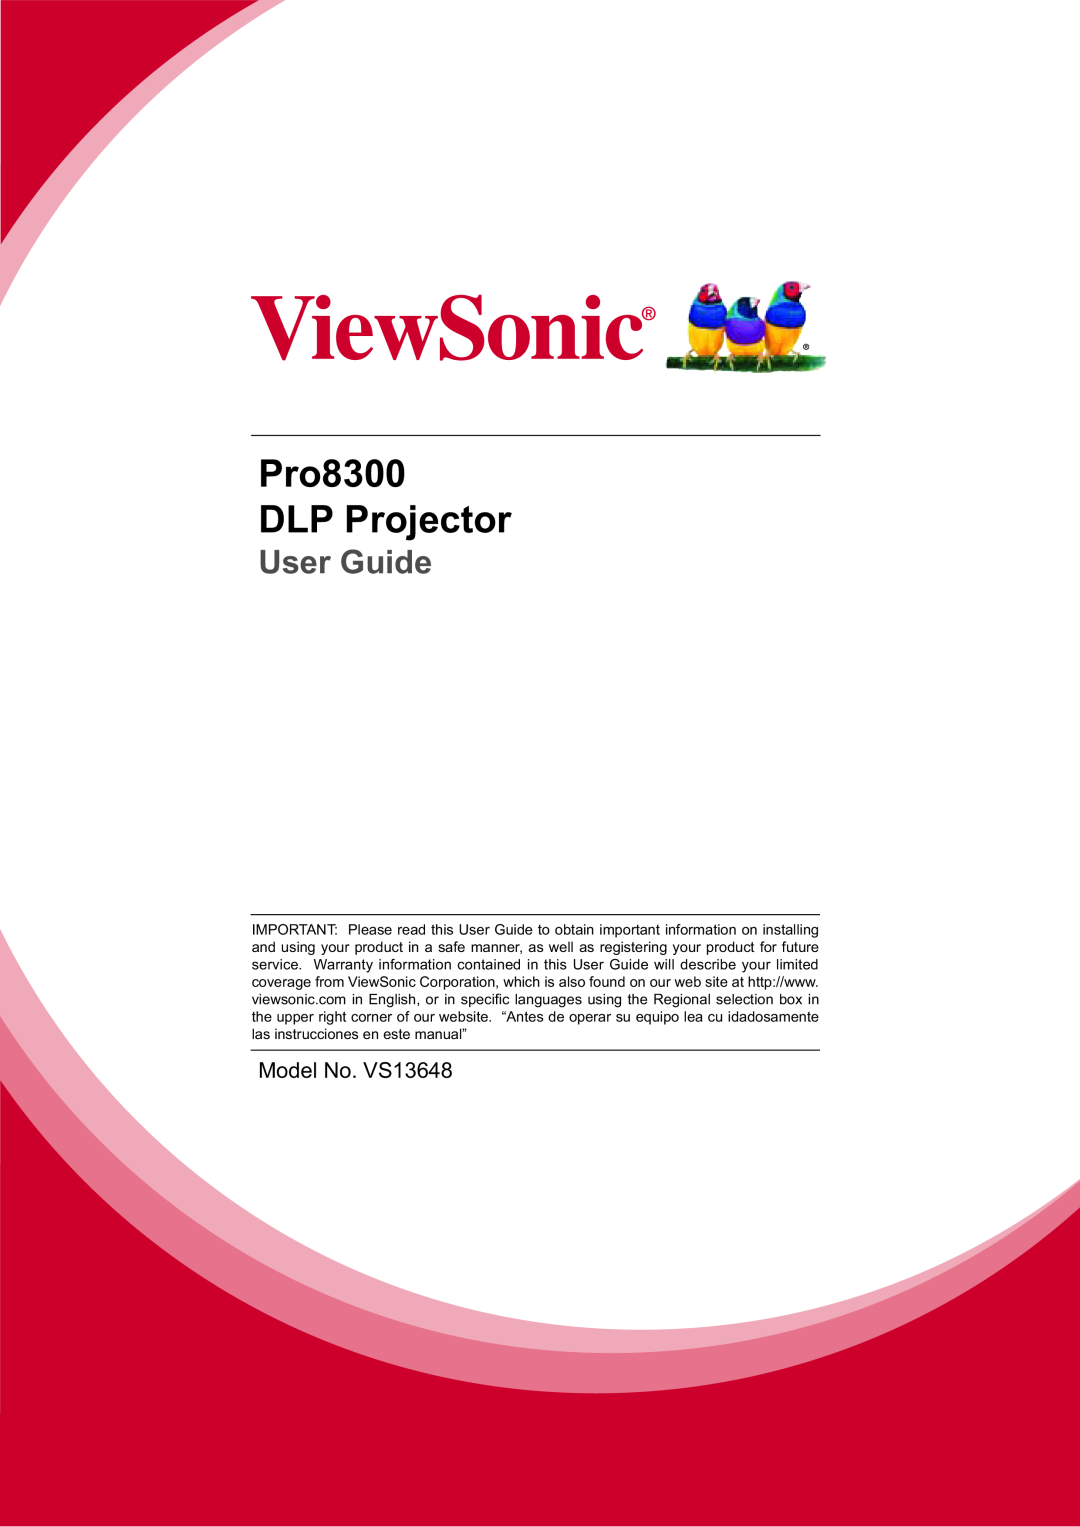 ViewSonic PRO8300 warranty Pro8300 DLP Projector, User Guide 